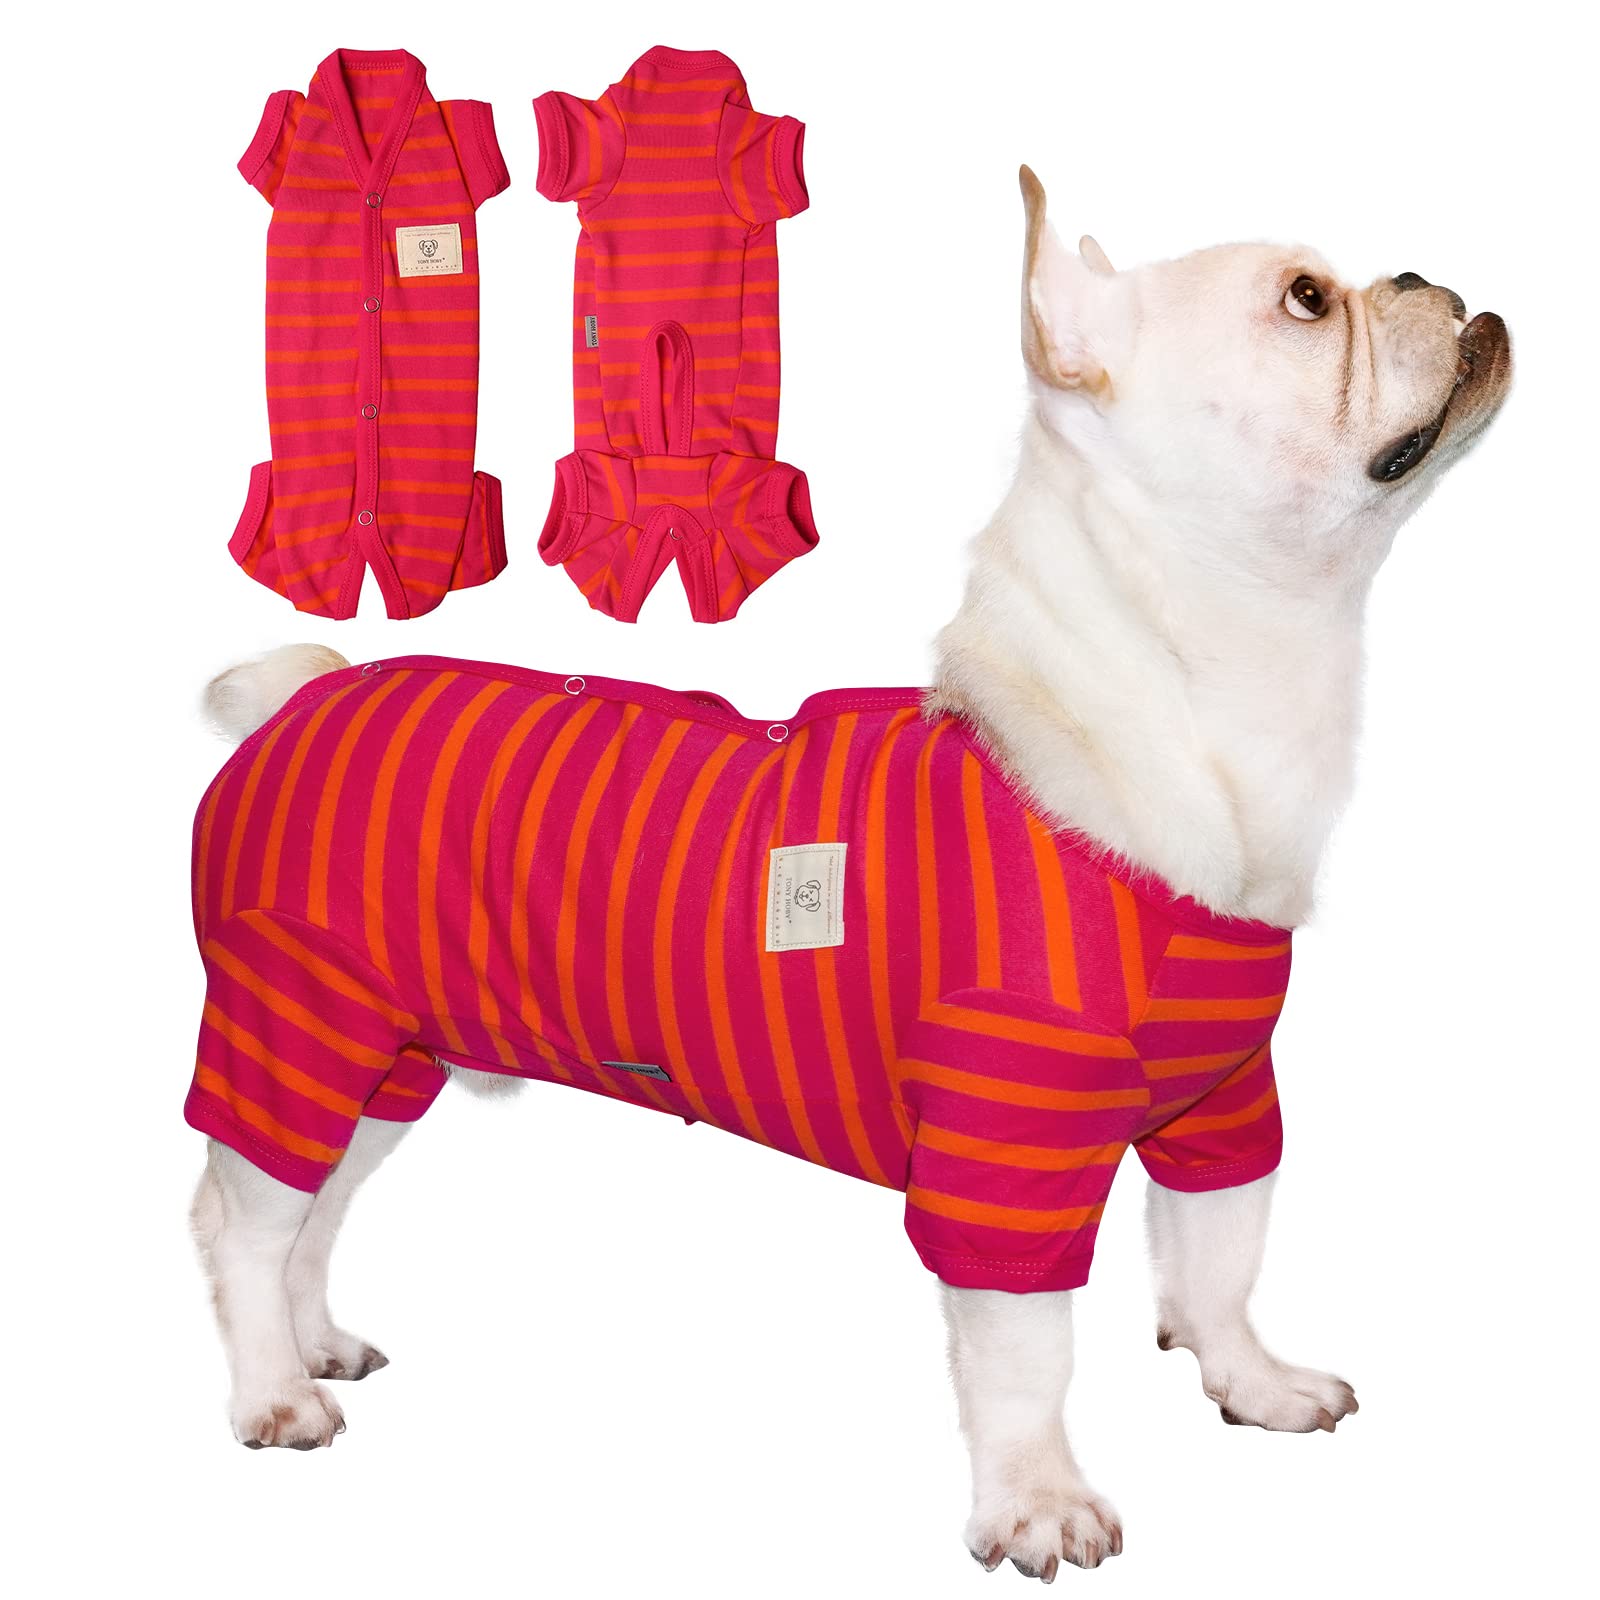 Tony Hoby Femalemale Dog Pajamas, Dog Jumpsuit 4 Legged Pajamas With Stripes, Soft Cotton Dog Onesies For Comfortable Sleep (Ros